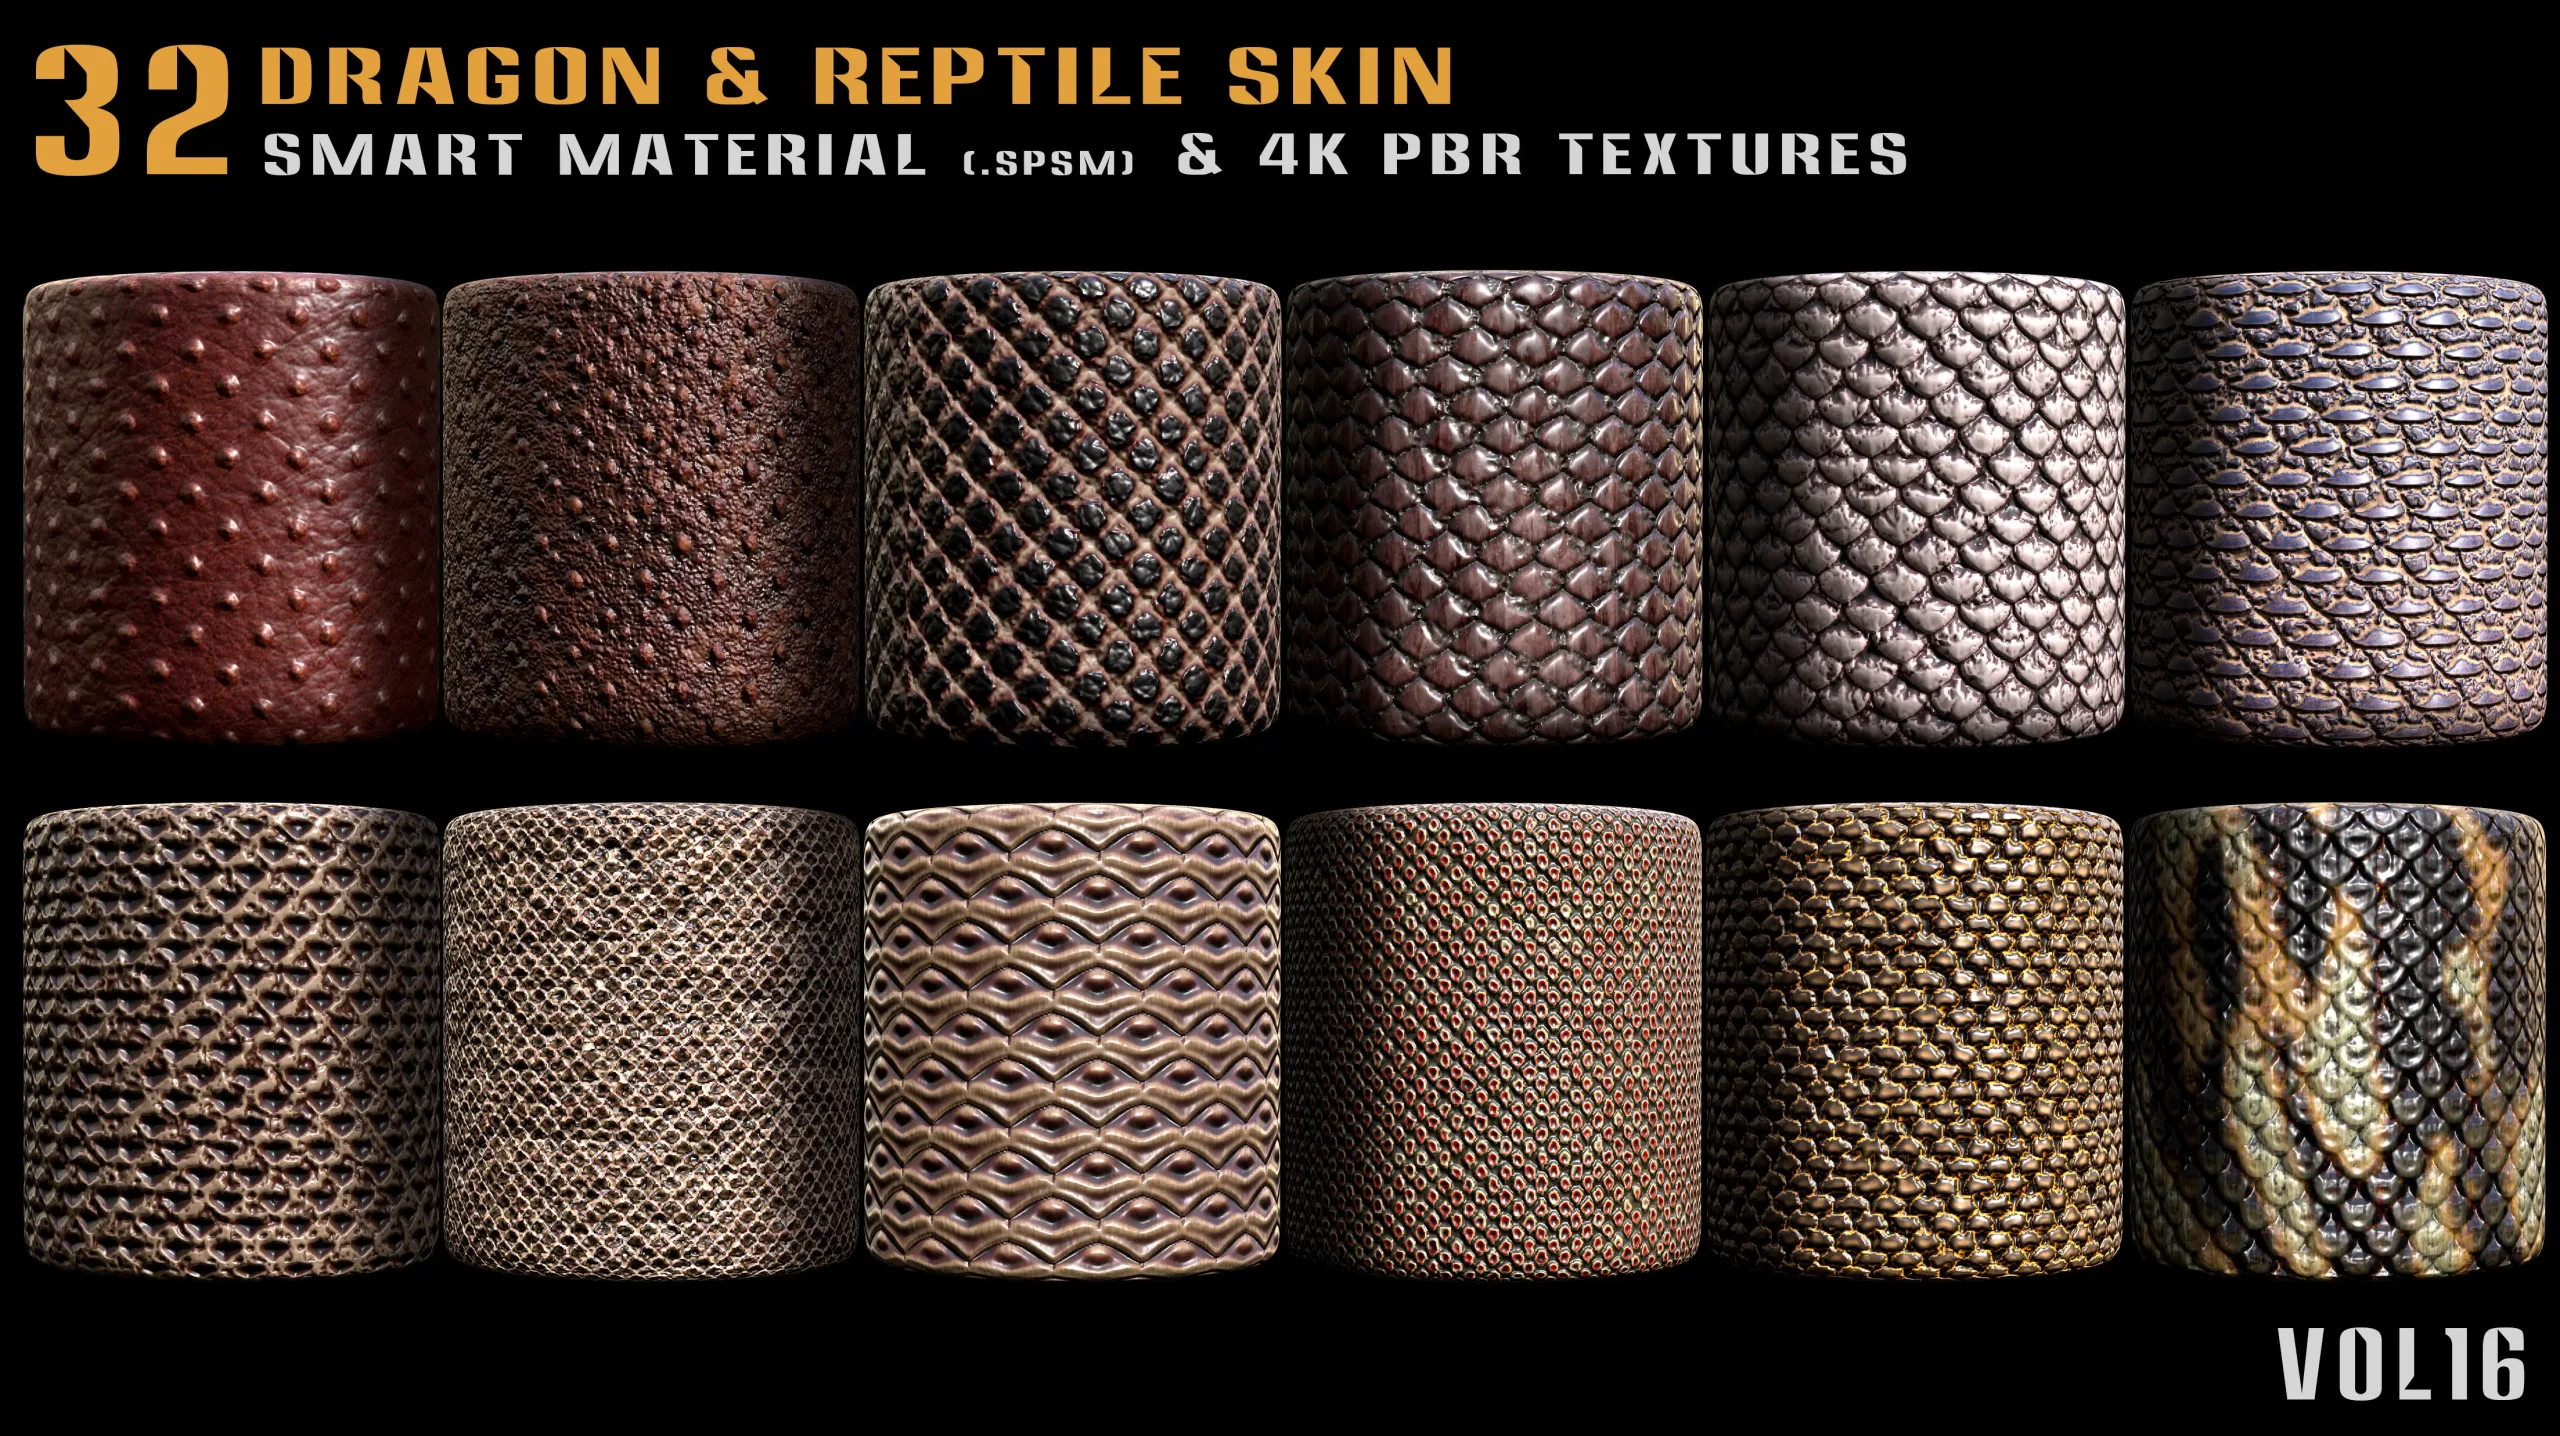 32 Dragon & Reptile Skin Smart Material + 4K PBR textures - Vol.16